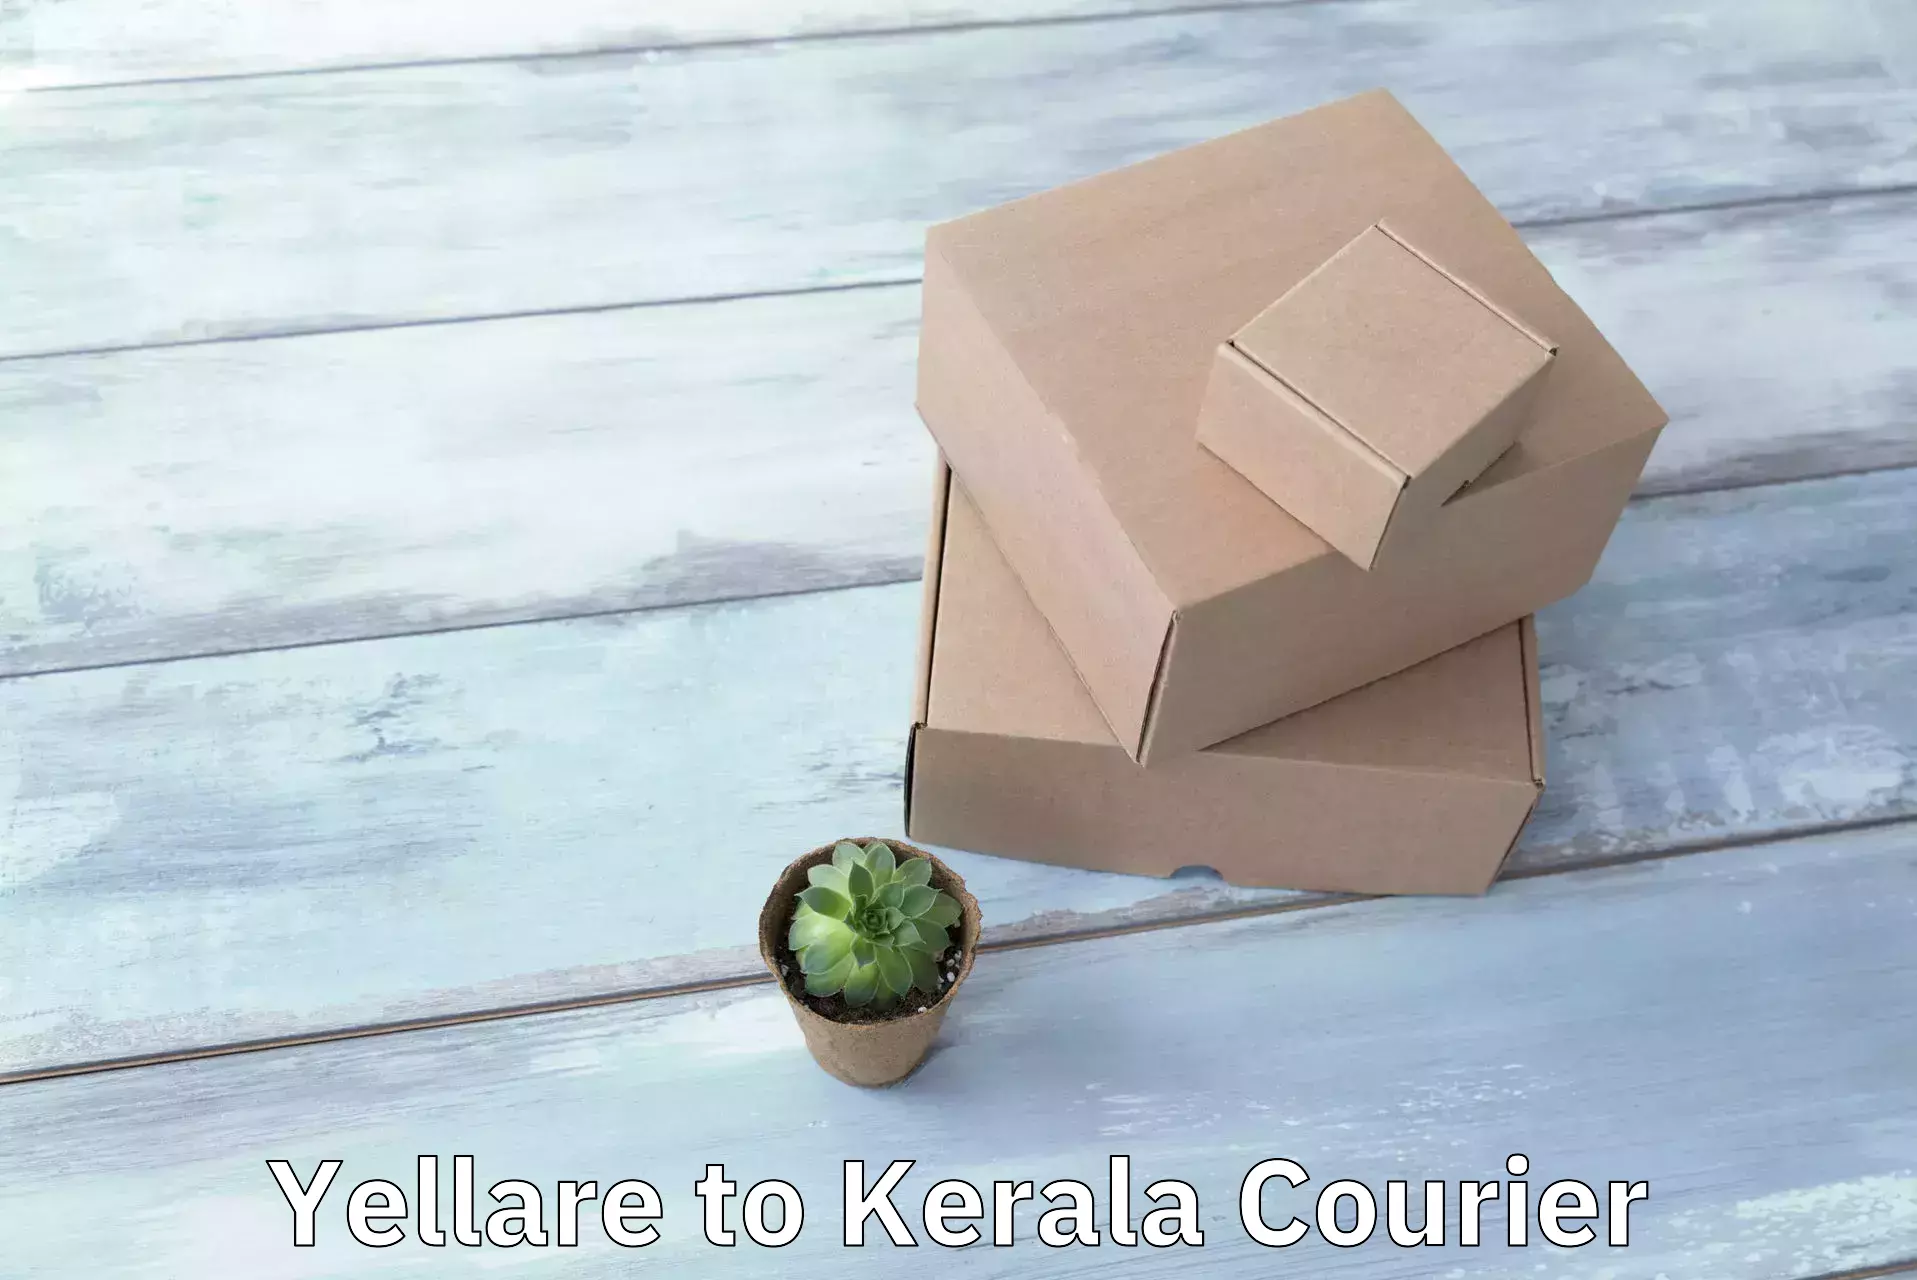 Cash on delivery service Yellare to Cochin Port Kochi